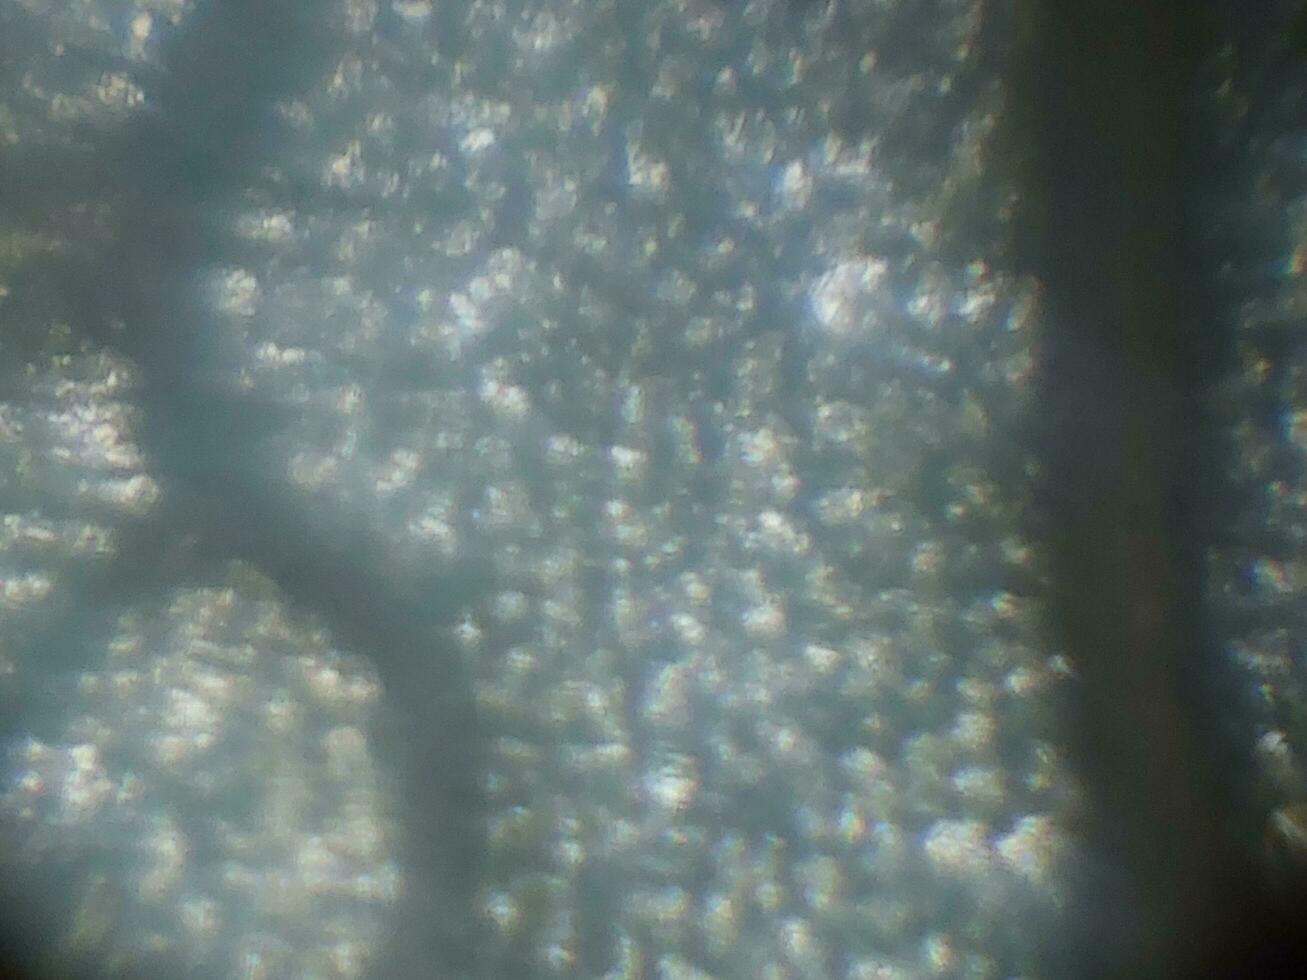 mikroskopisk fotografi av biologisk objekt foto